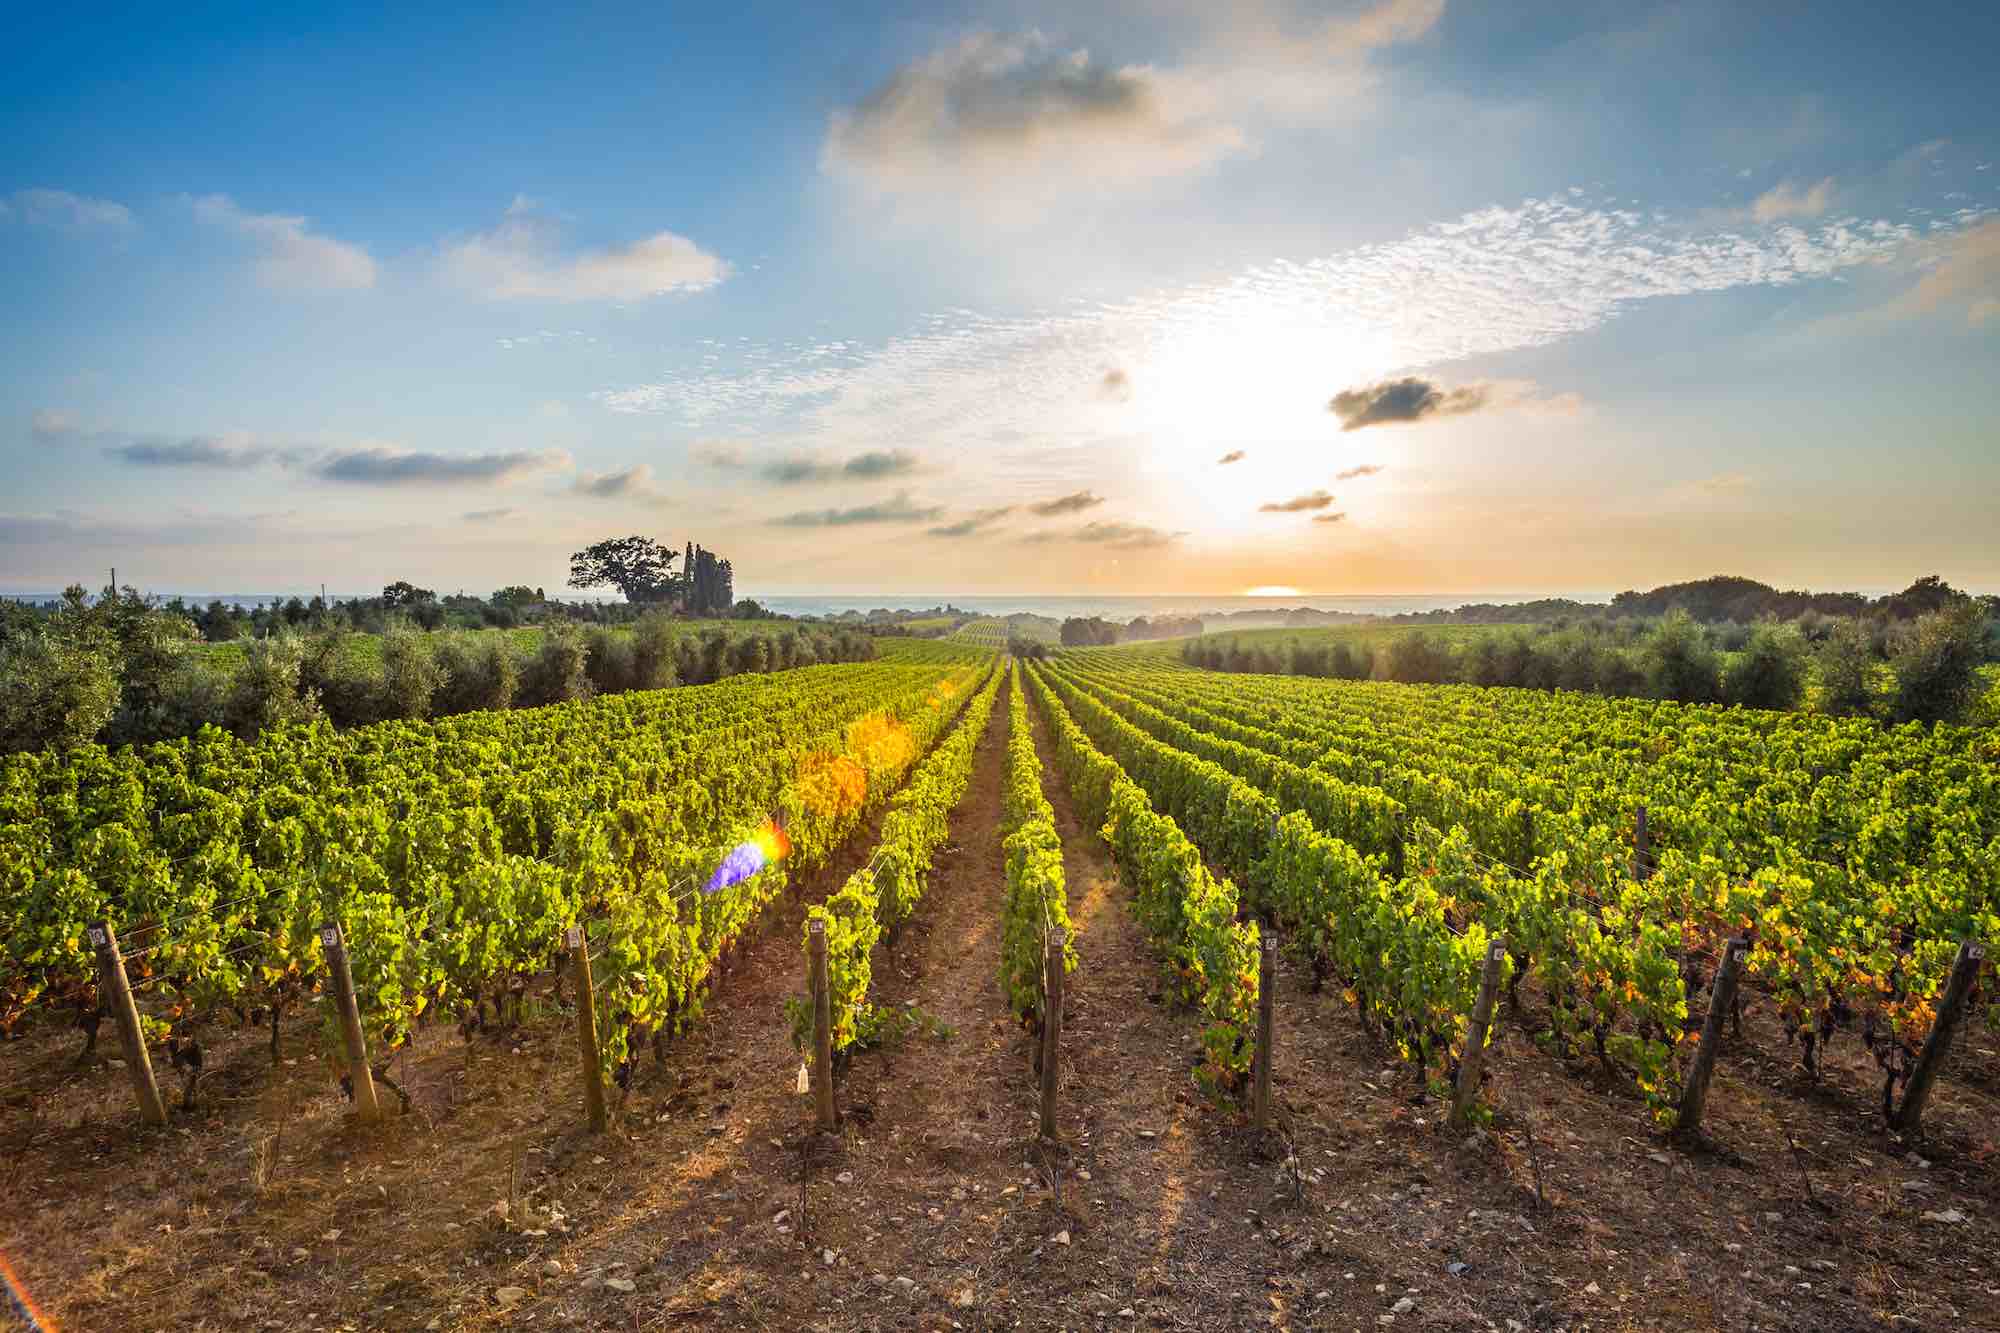 Vigne in Toscana nel territorio di produzione del Bolgheri DOC